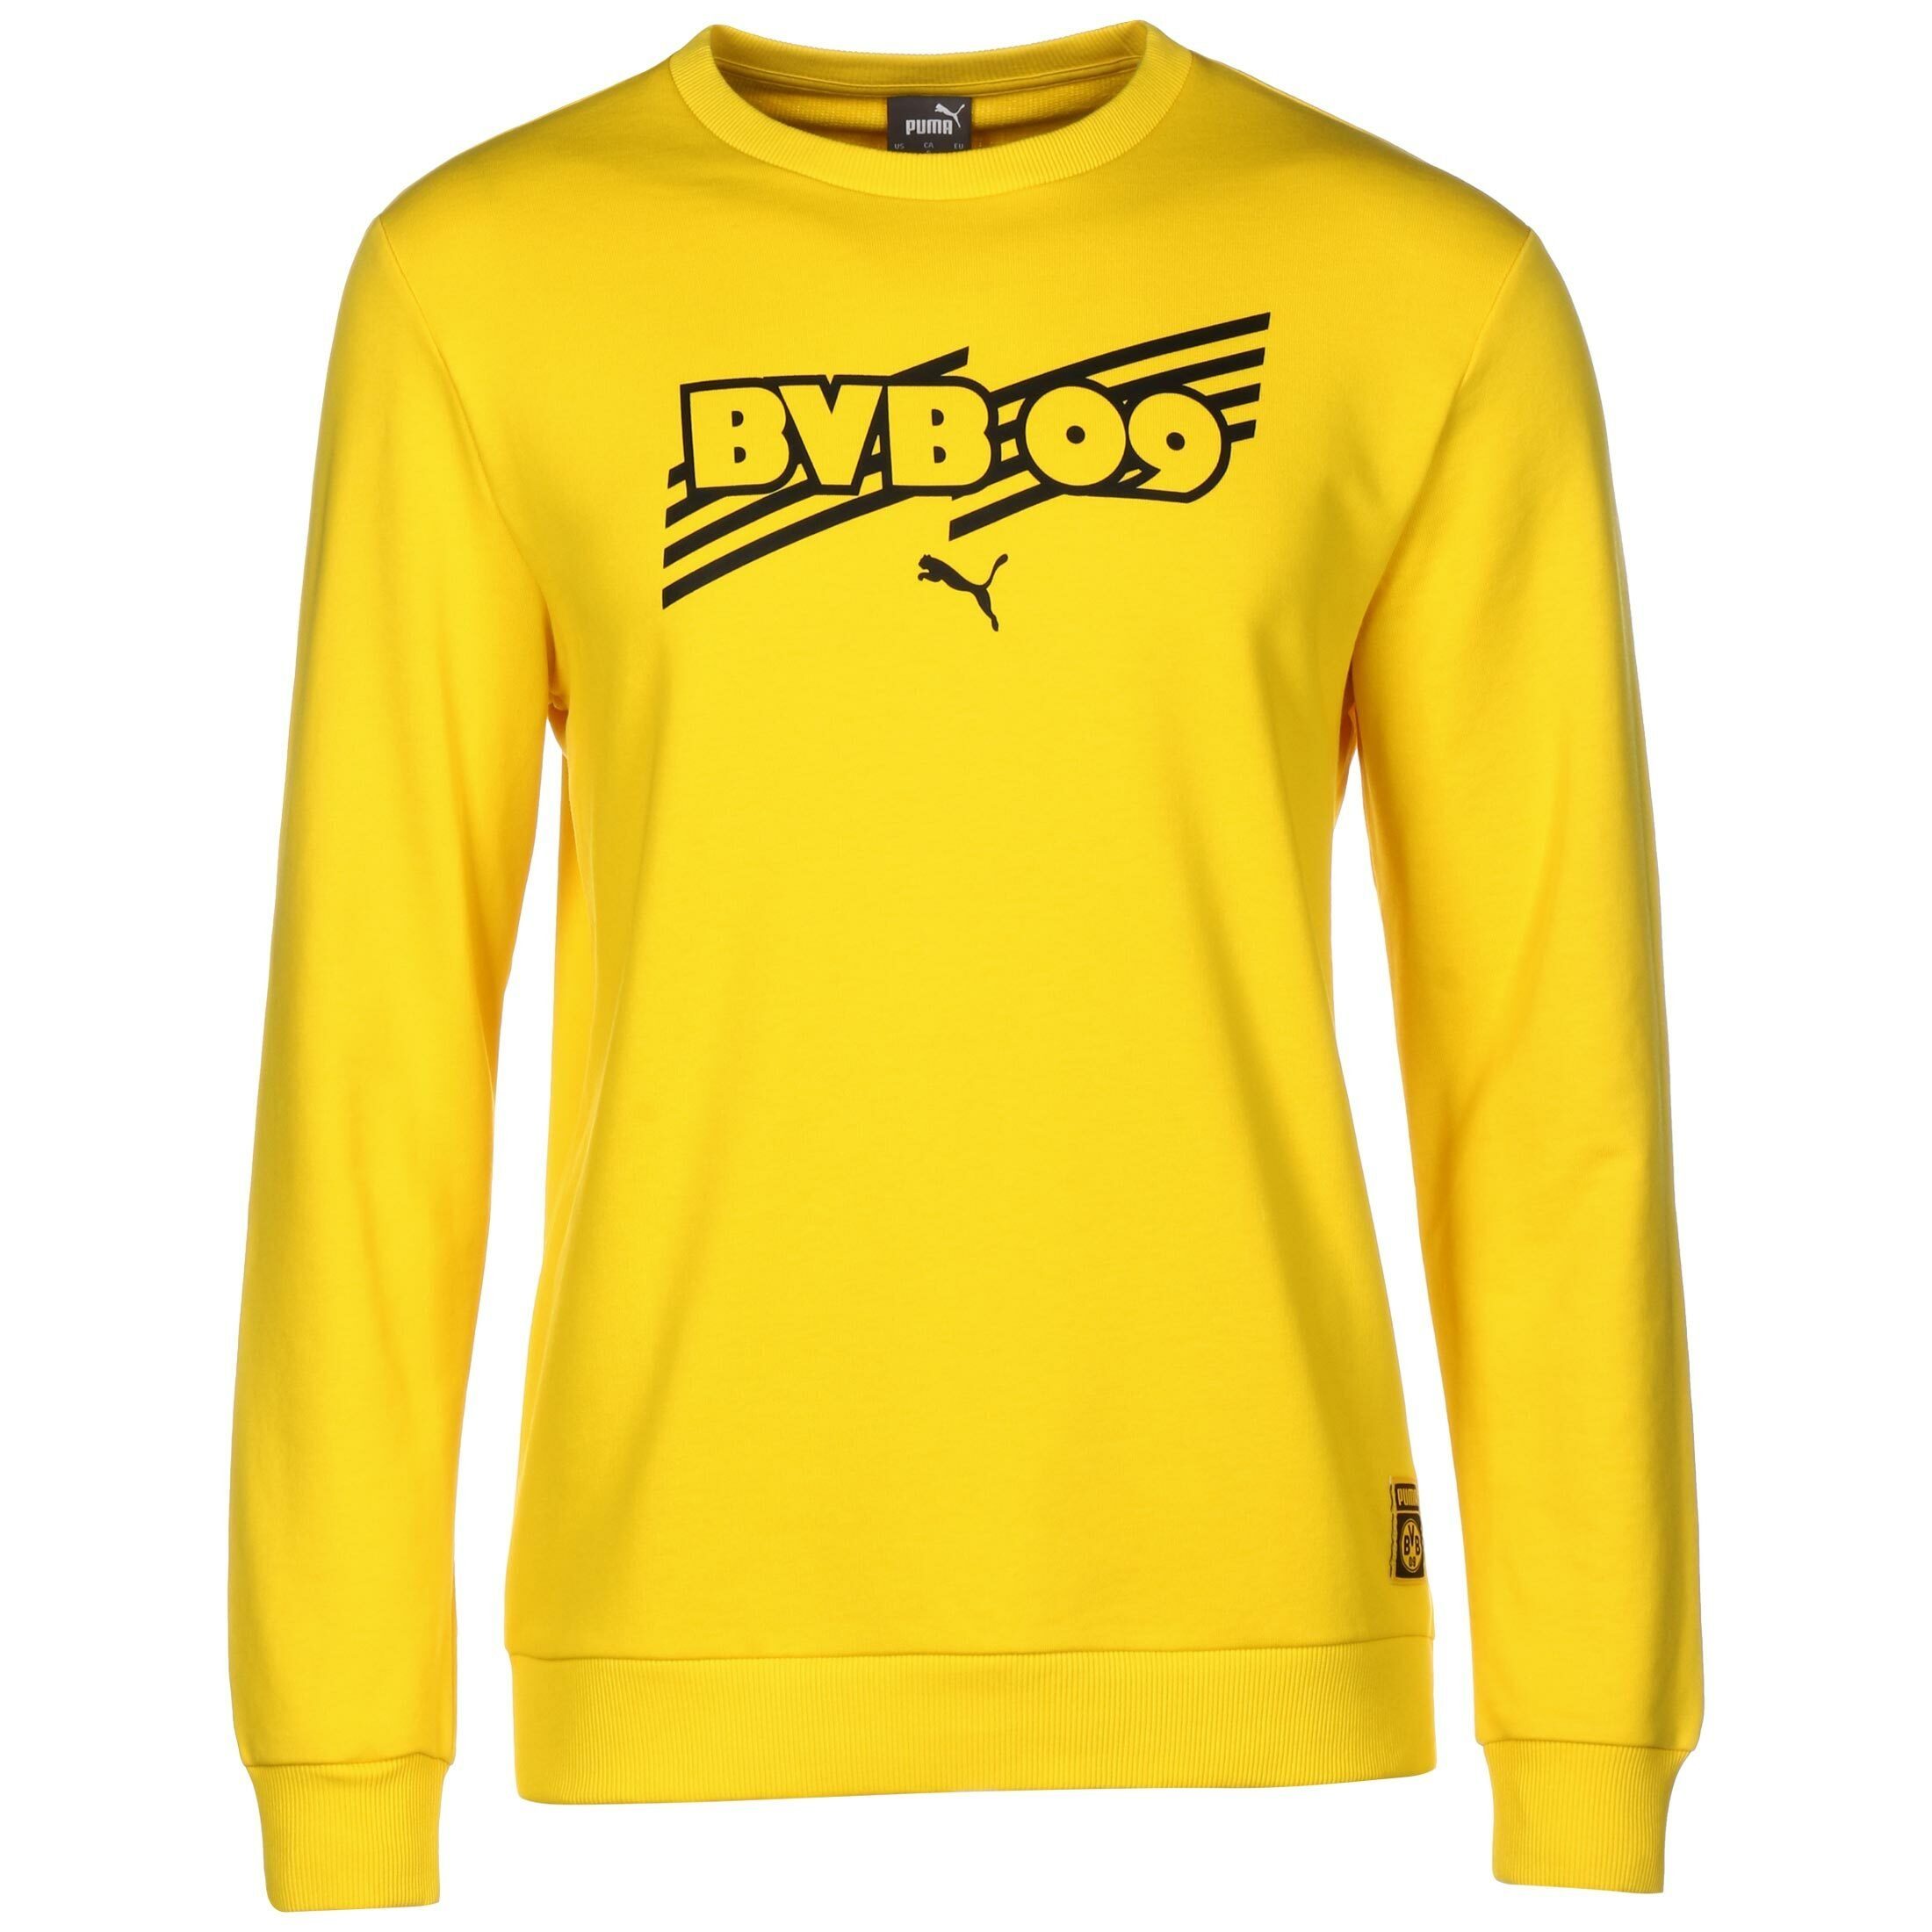 Herren Borussia Dortmund Pullover » Bvb Pullis online kaufen | OTTO